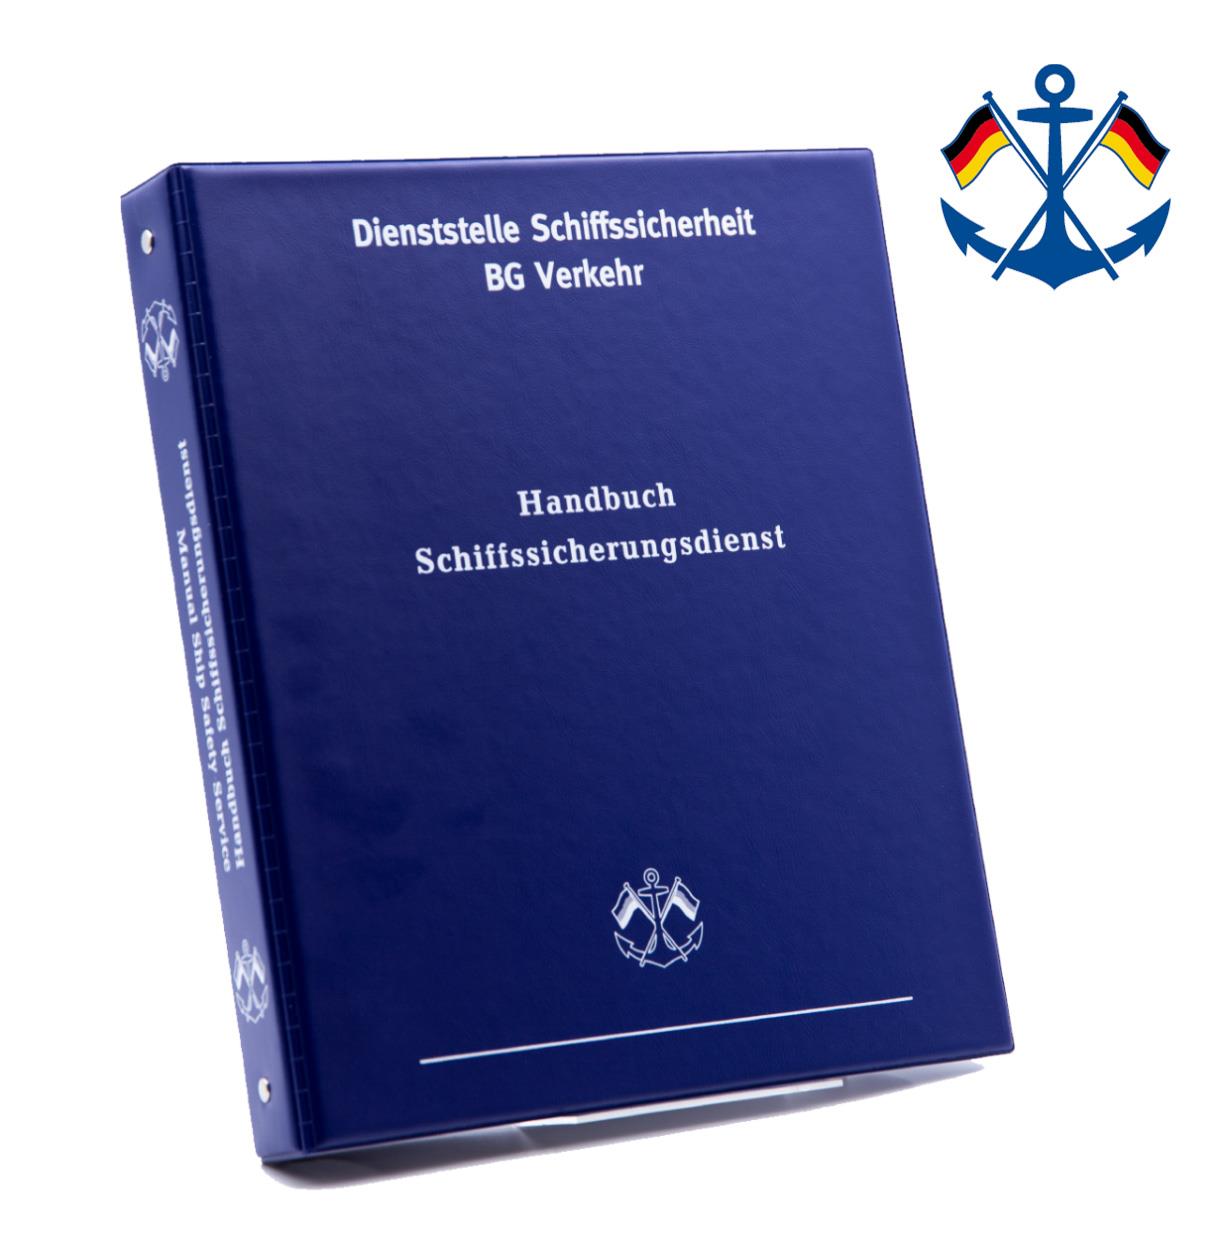 Handbuch Schiffssicherungsdienst/ Manual Ship Safety Service